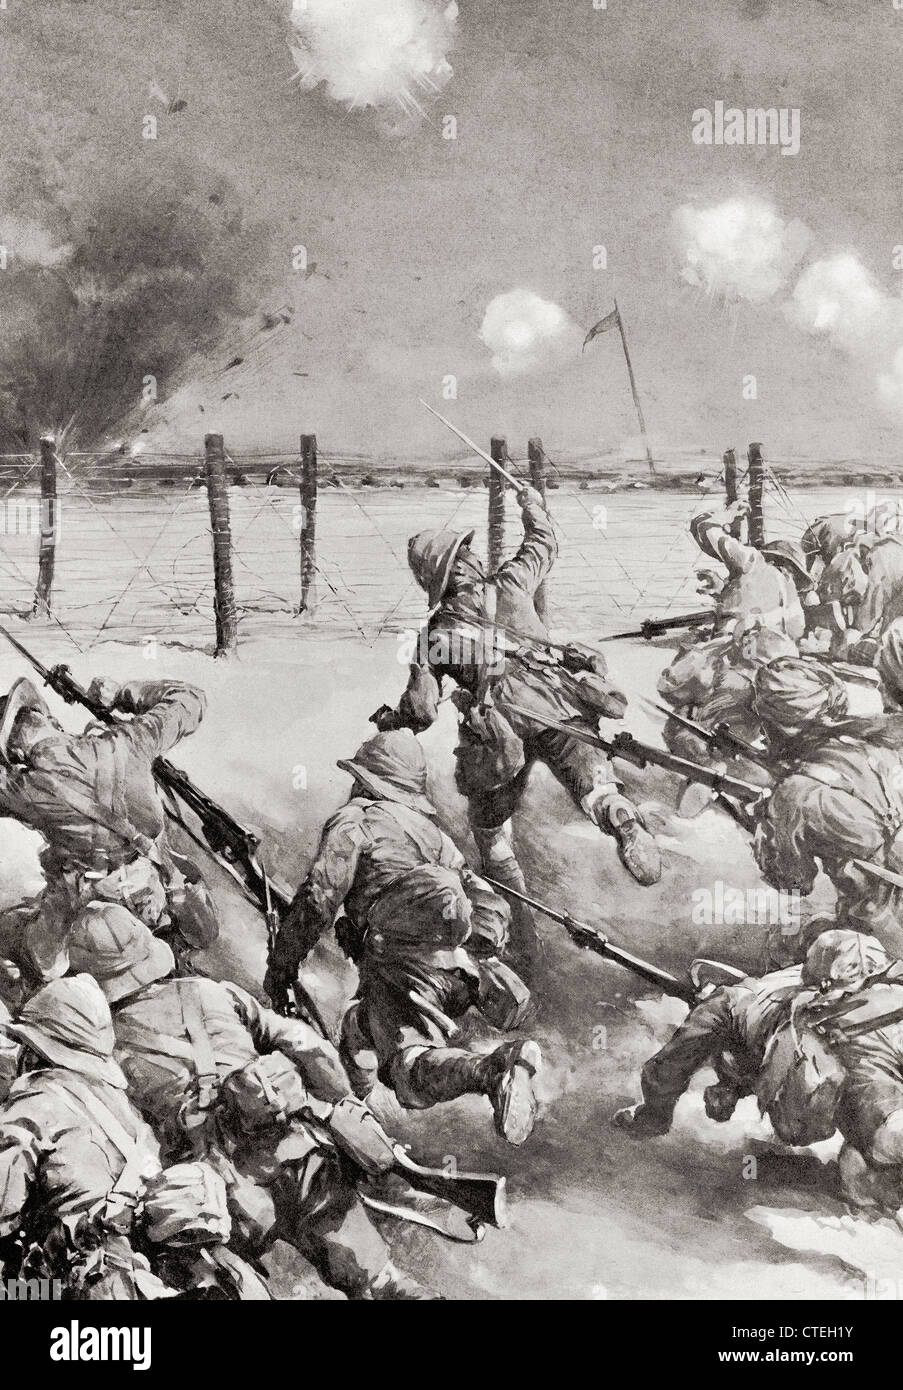 Die 2. Dorsets bei Kut-el-Amara Angriff der türkischen Schanzen an der Belagerung von Kut im ersten Weltkrieg. Stockfoto